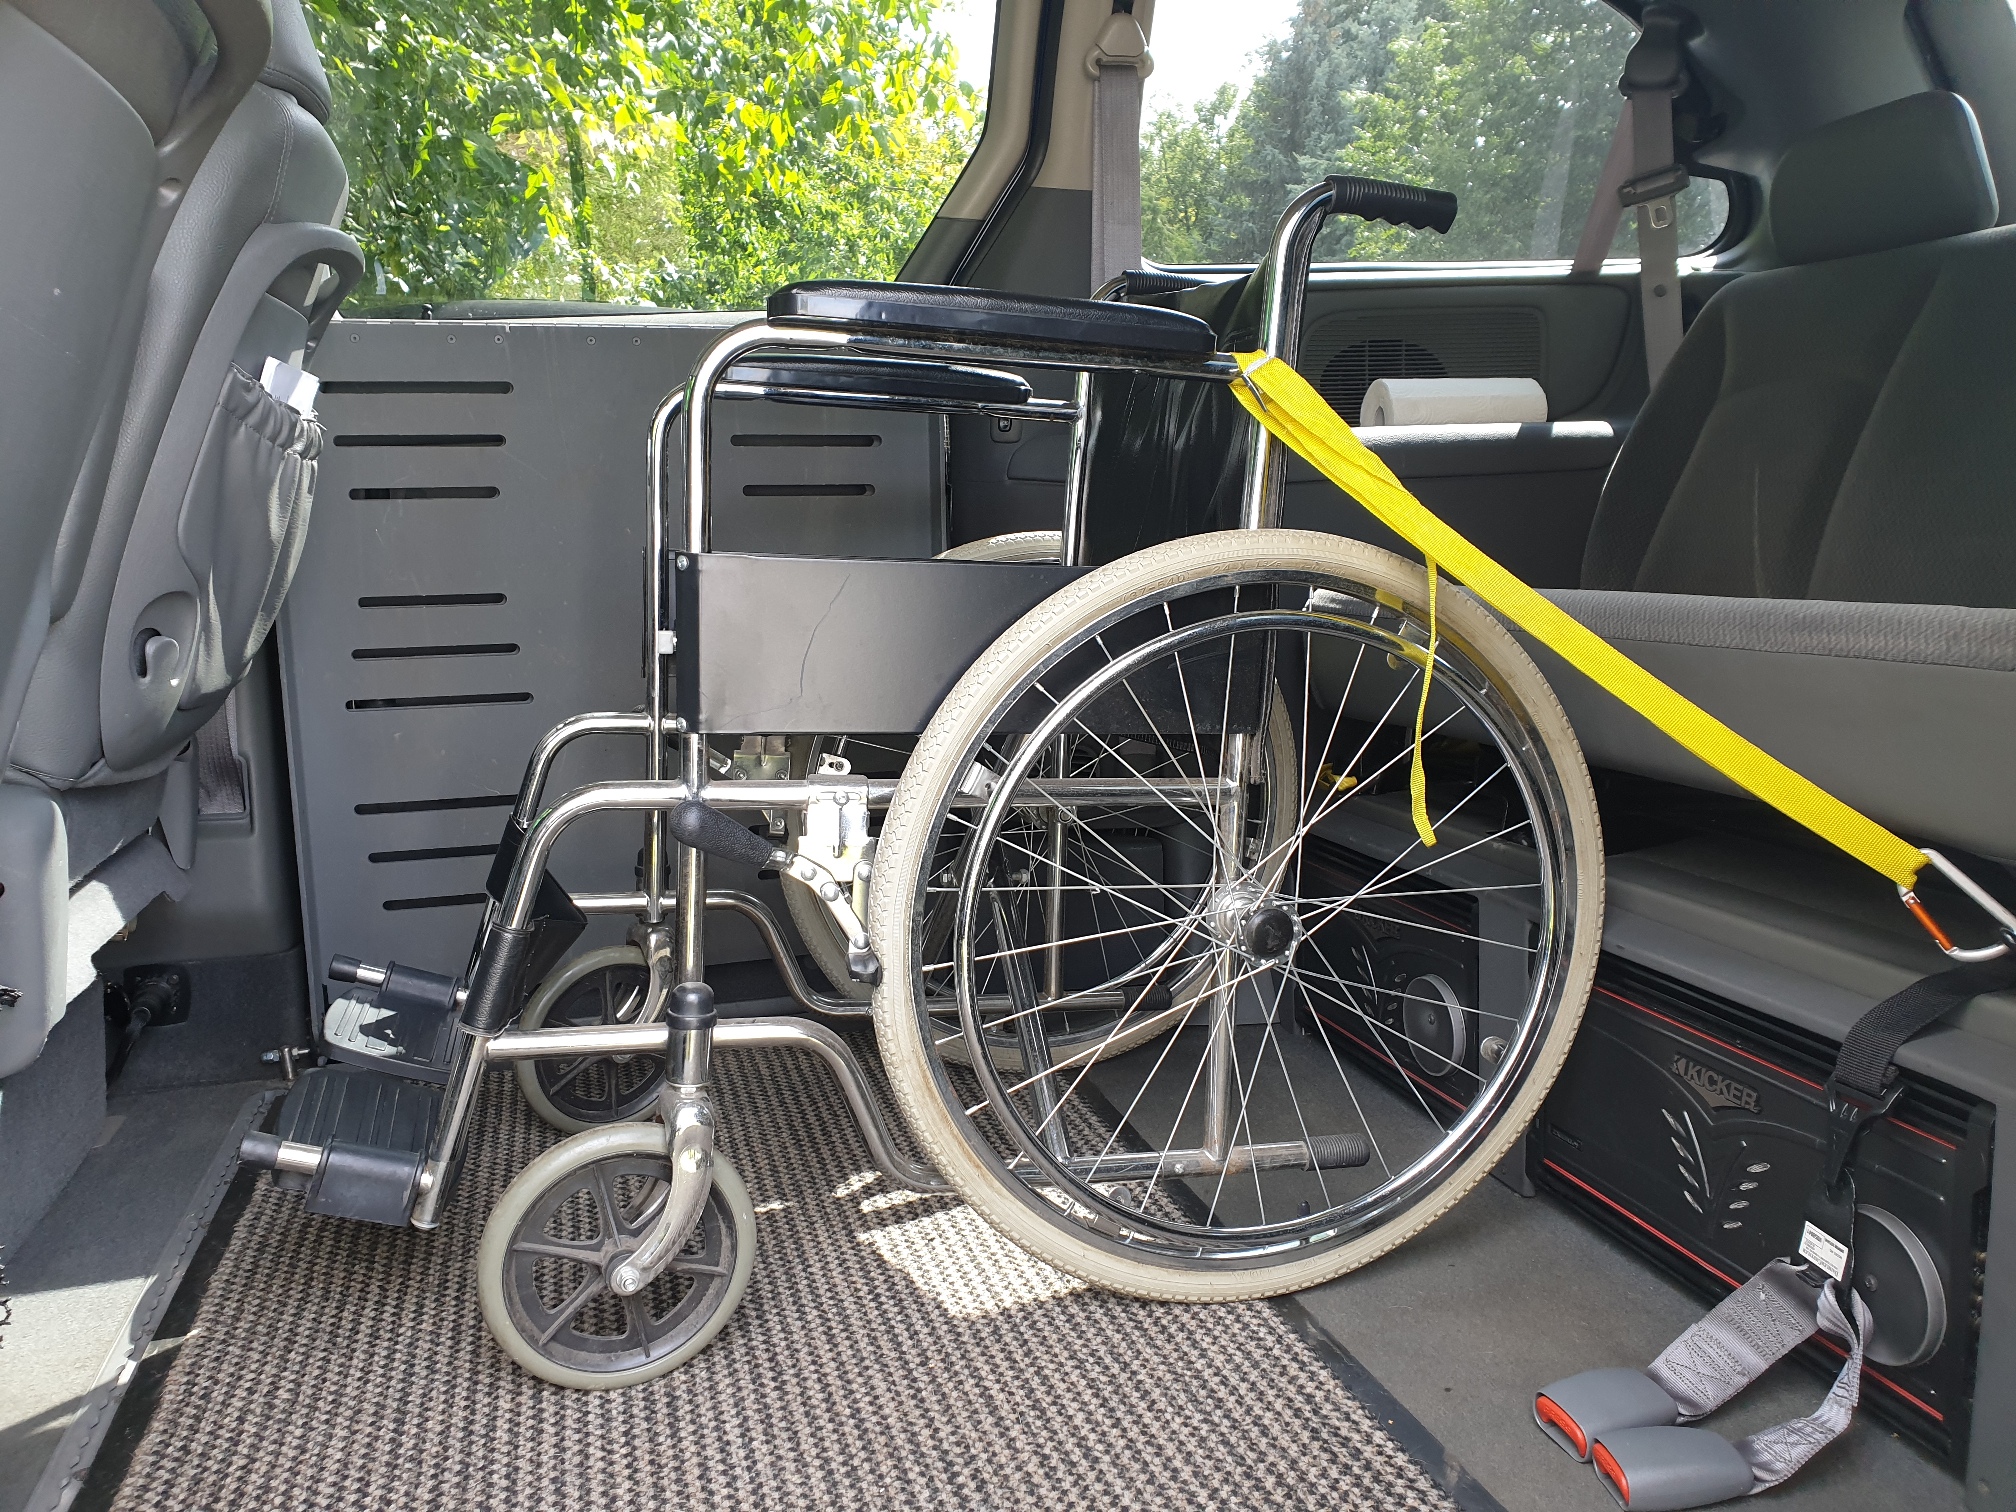 перевозка больных в инвалидном кресле